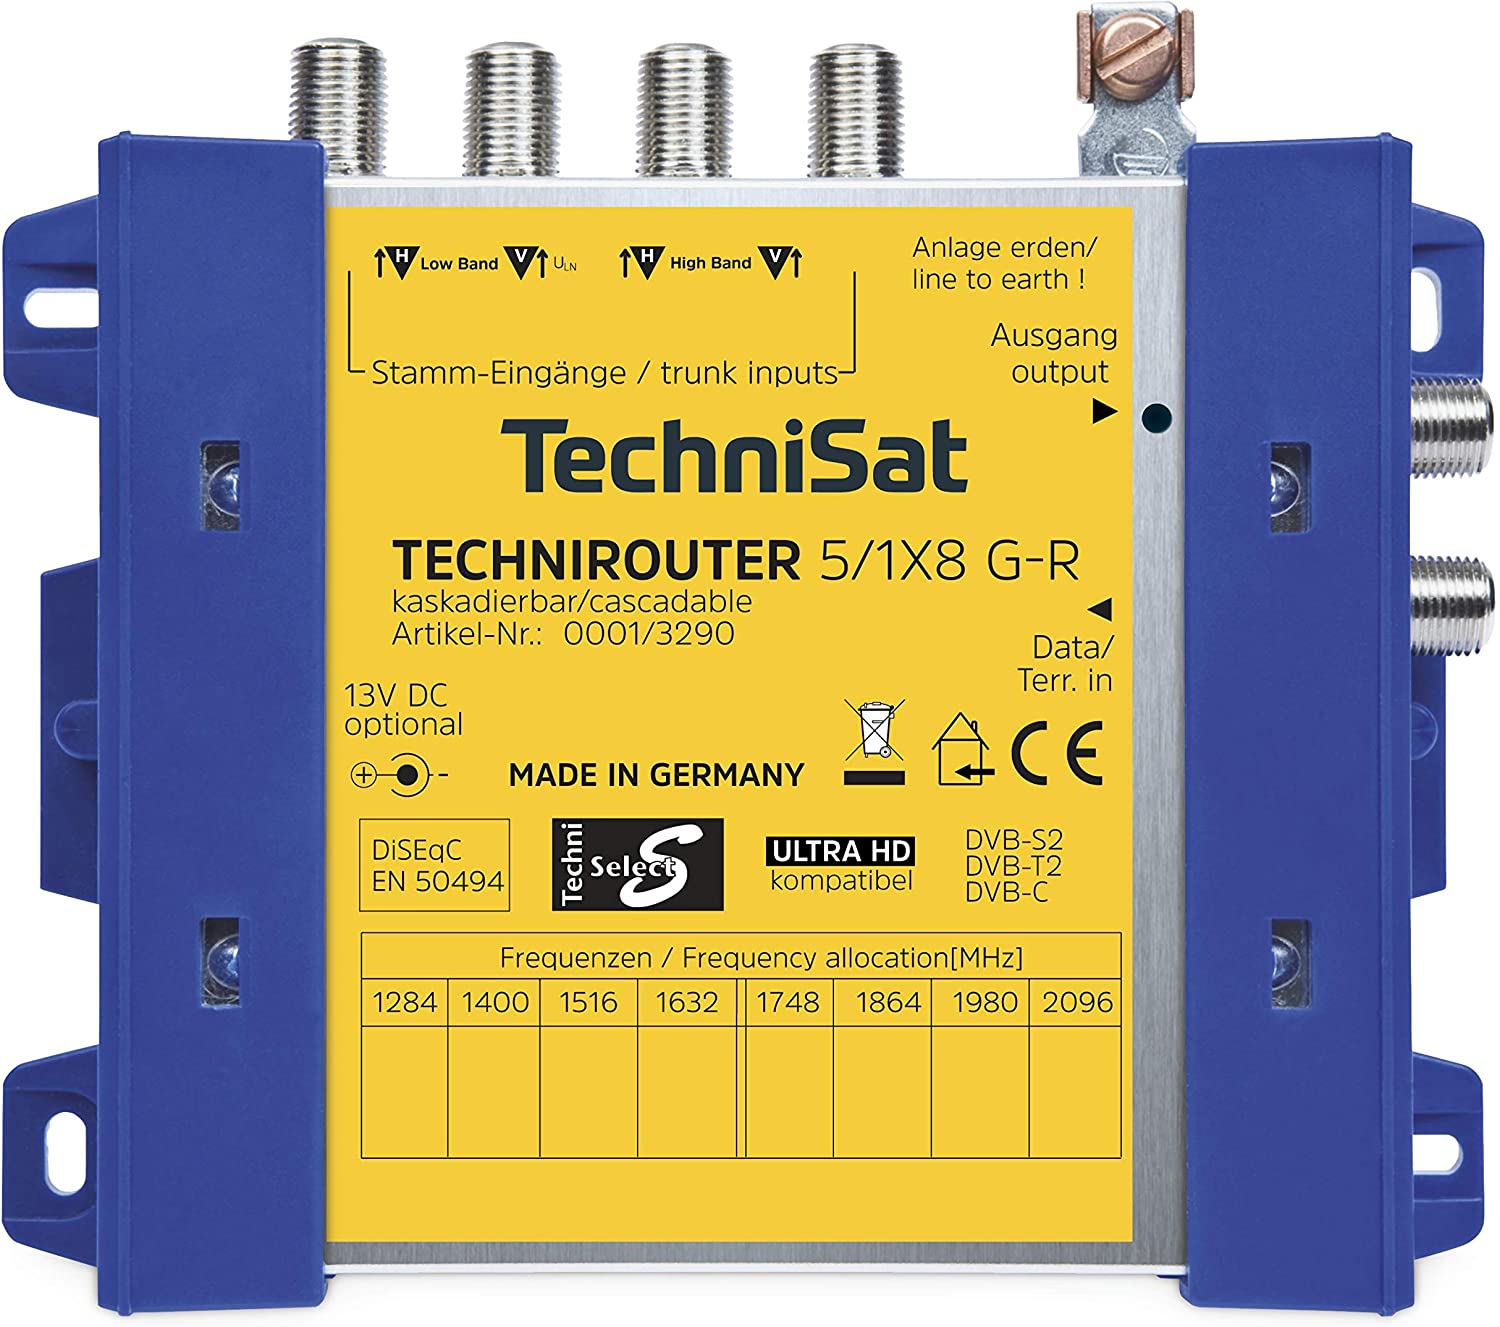 TechniSat TechniRouter 5/1x8 G-R - Multiswitch Satelliten-/terrestrisches Signal von Technisat